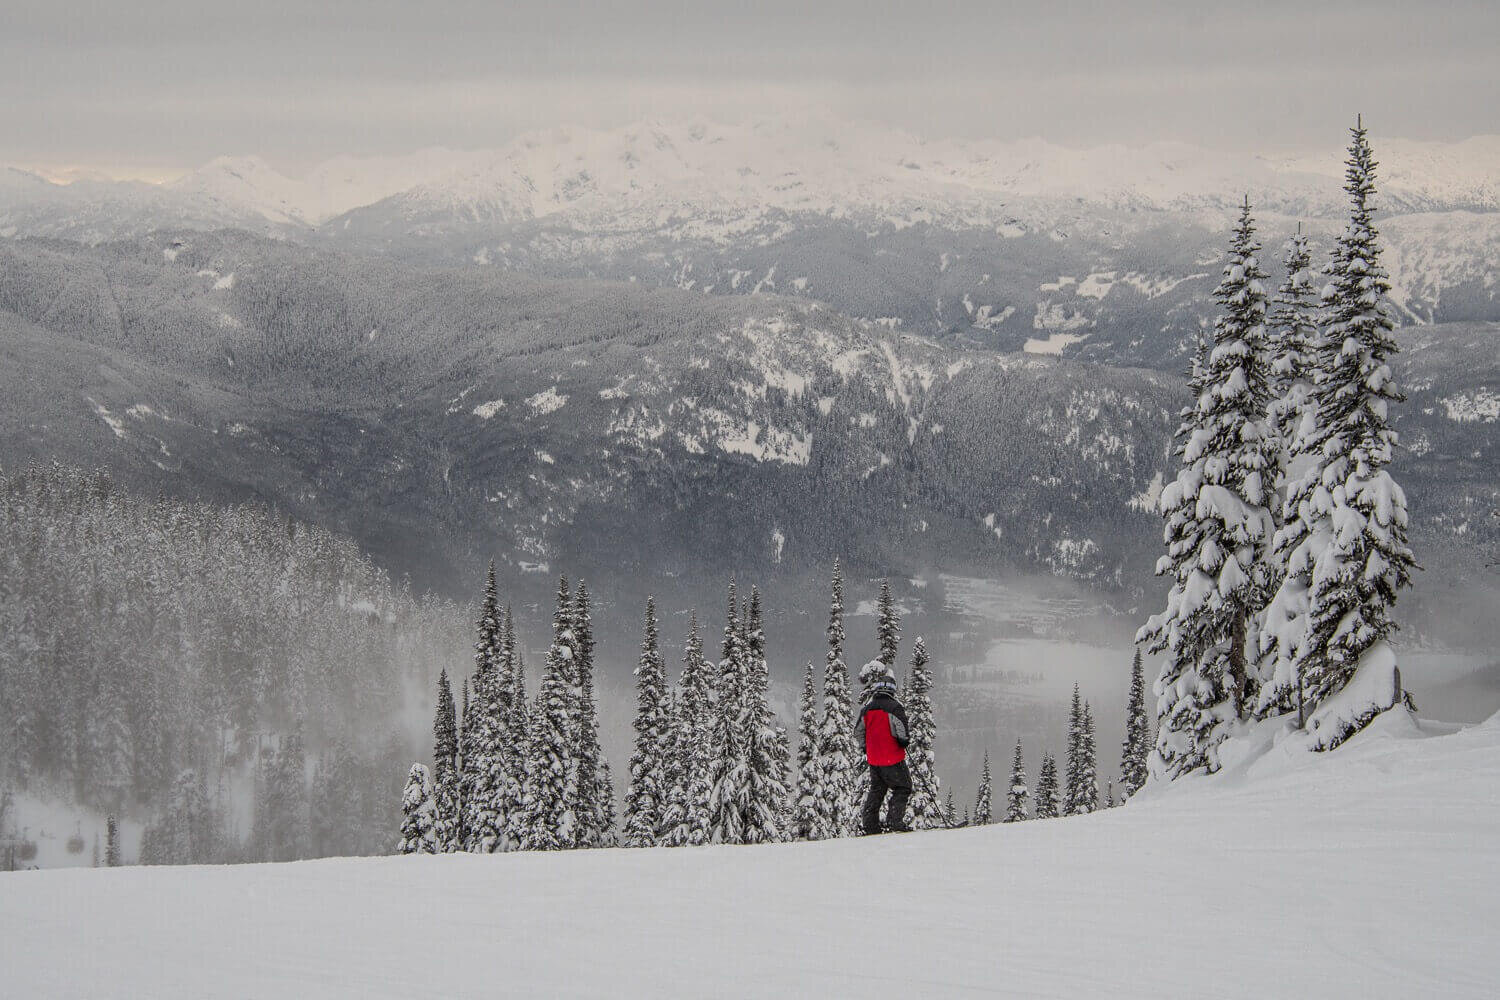 En promedio, el centro de esquí recibe 11.9 metros de nieve al año. Turismo en Whistler, BC.